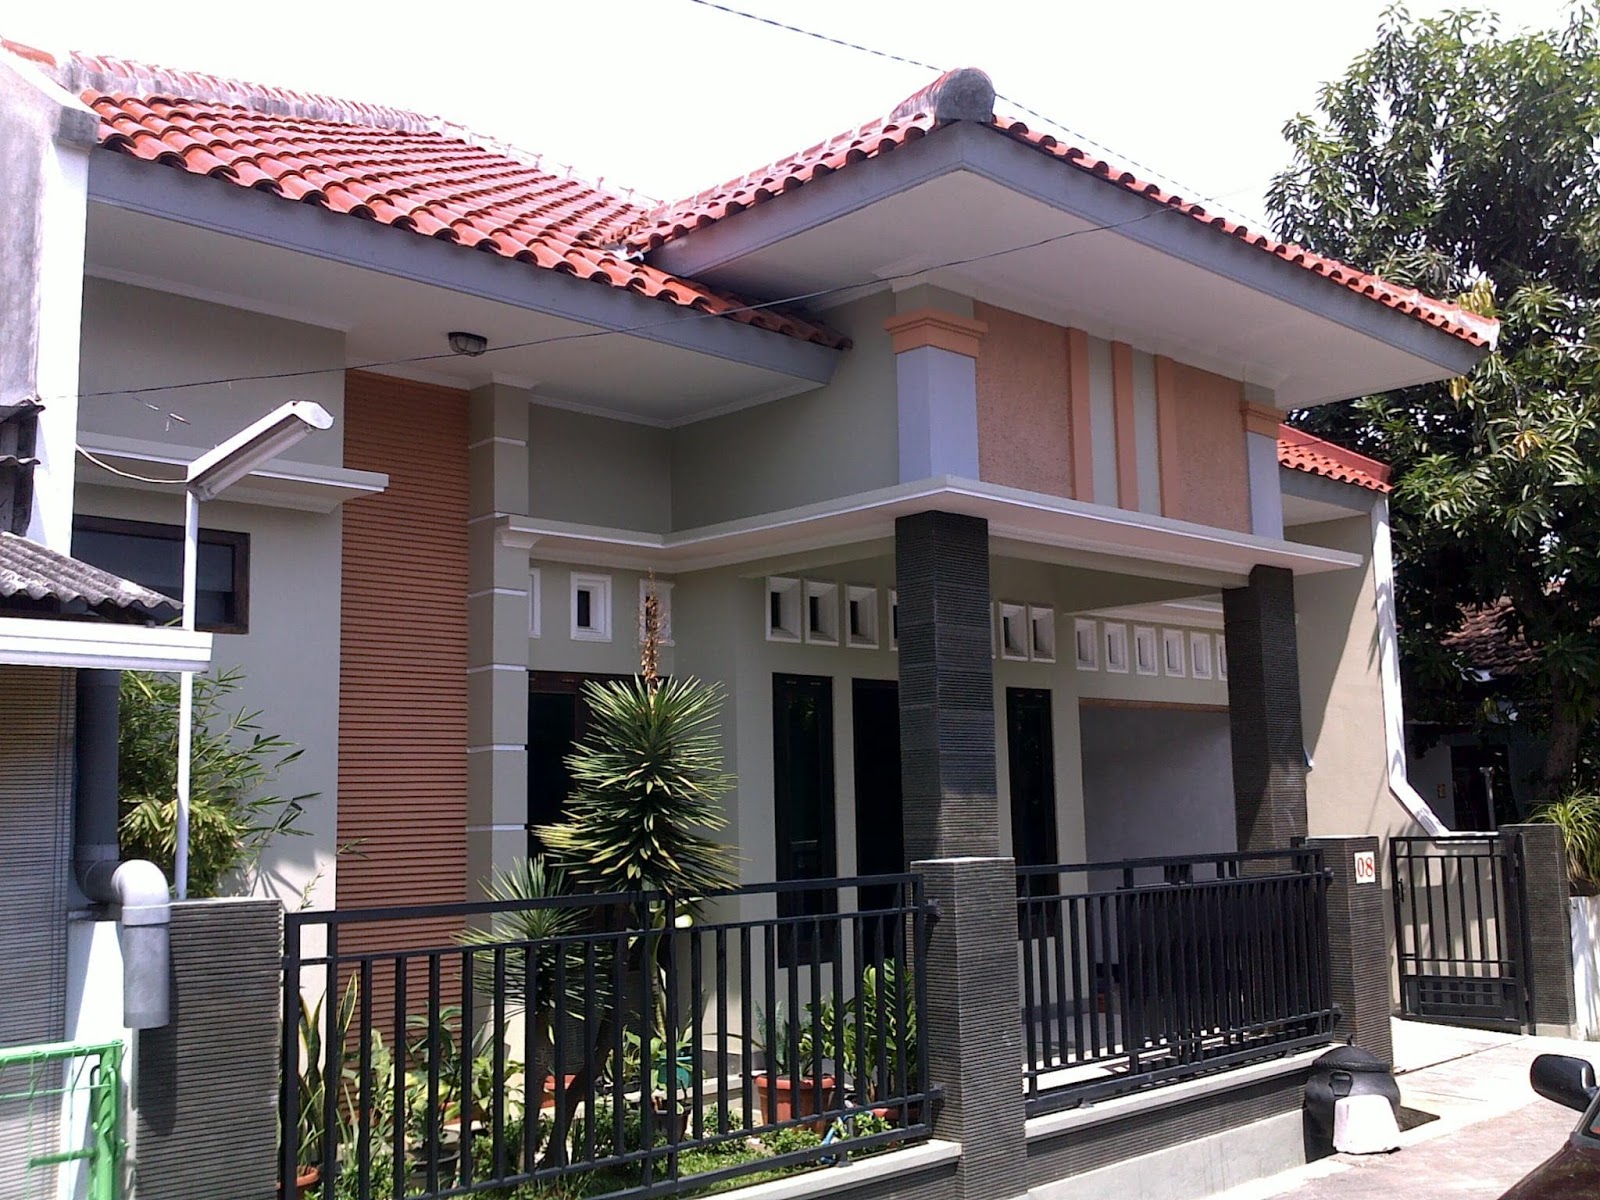 54 Desain Rumah Sederhana di Kampung Yang Terlihat Cantik ...